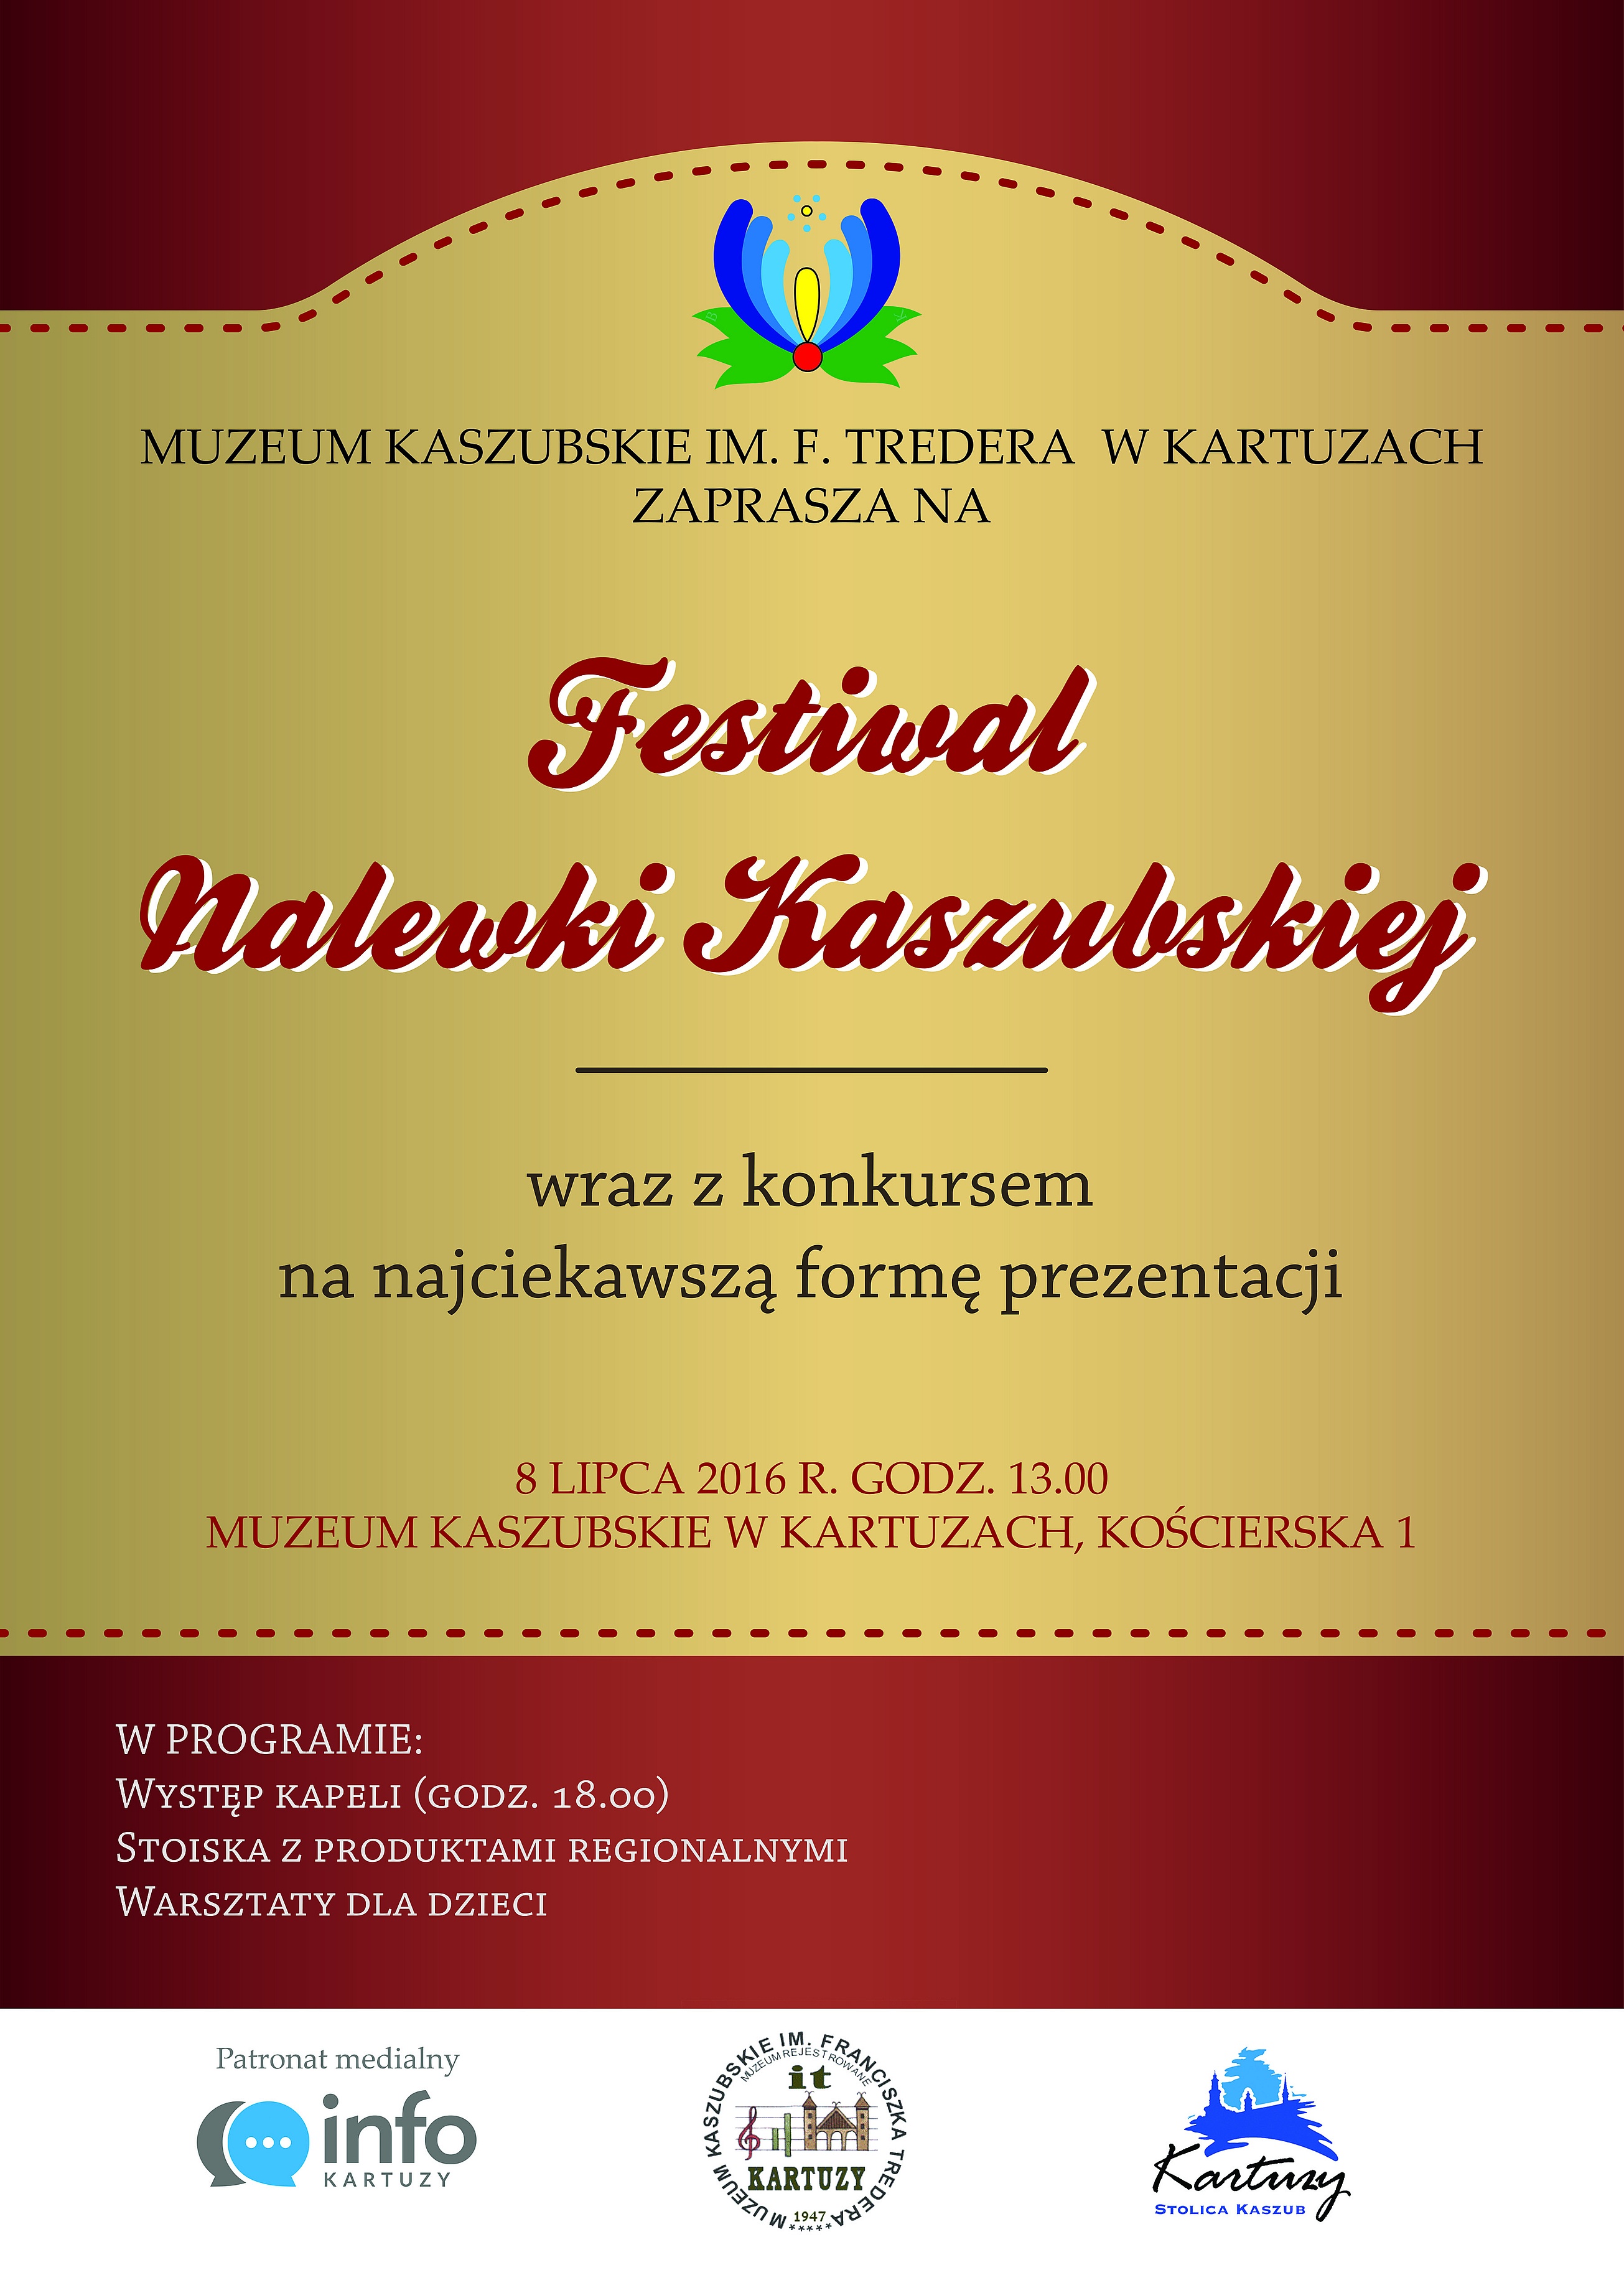 8 lipca  Muzeum Kaszubskie w Kartuzach  organizuje Festiwal Nalewek Kaszubskich wraz z konkursem na najciekawszą formę prezentacji.